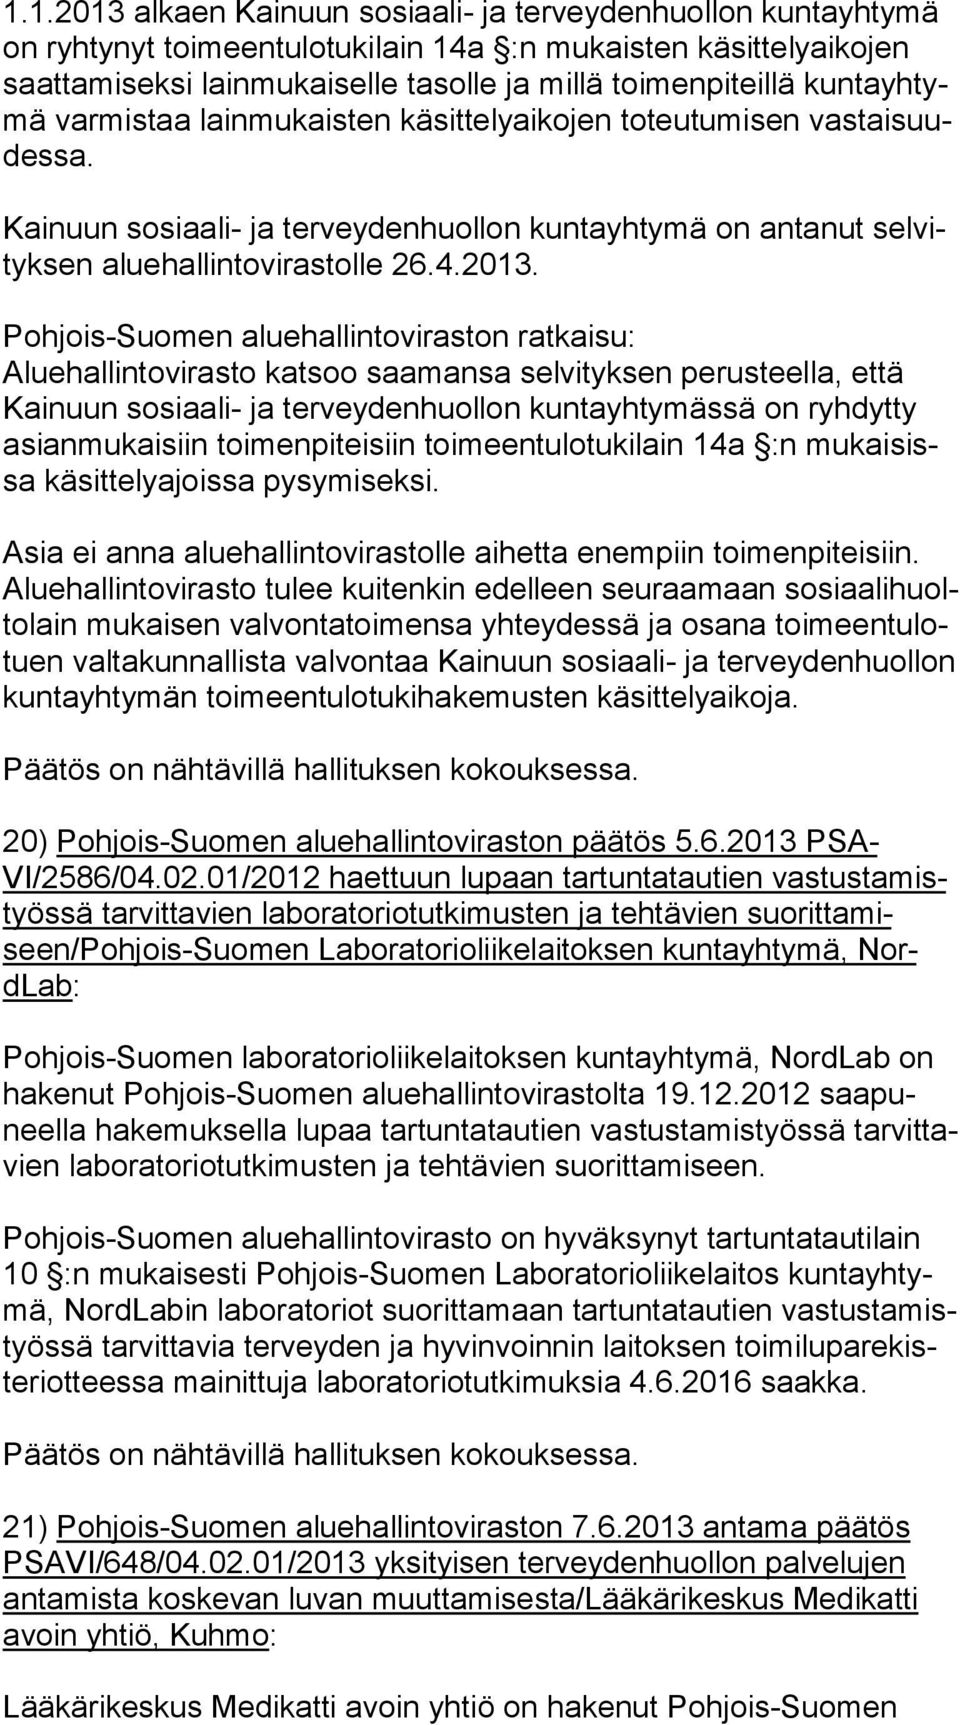 Pohjois-Suomen aluehallintoviraston ratkaisu: Aluehallintovirasto katsoo saamansa selvityksen perusteella, että Kai nuun sosiaali- ja terveydenhuollon kuntayhtymässä on ryhdytty asian mu kai siin